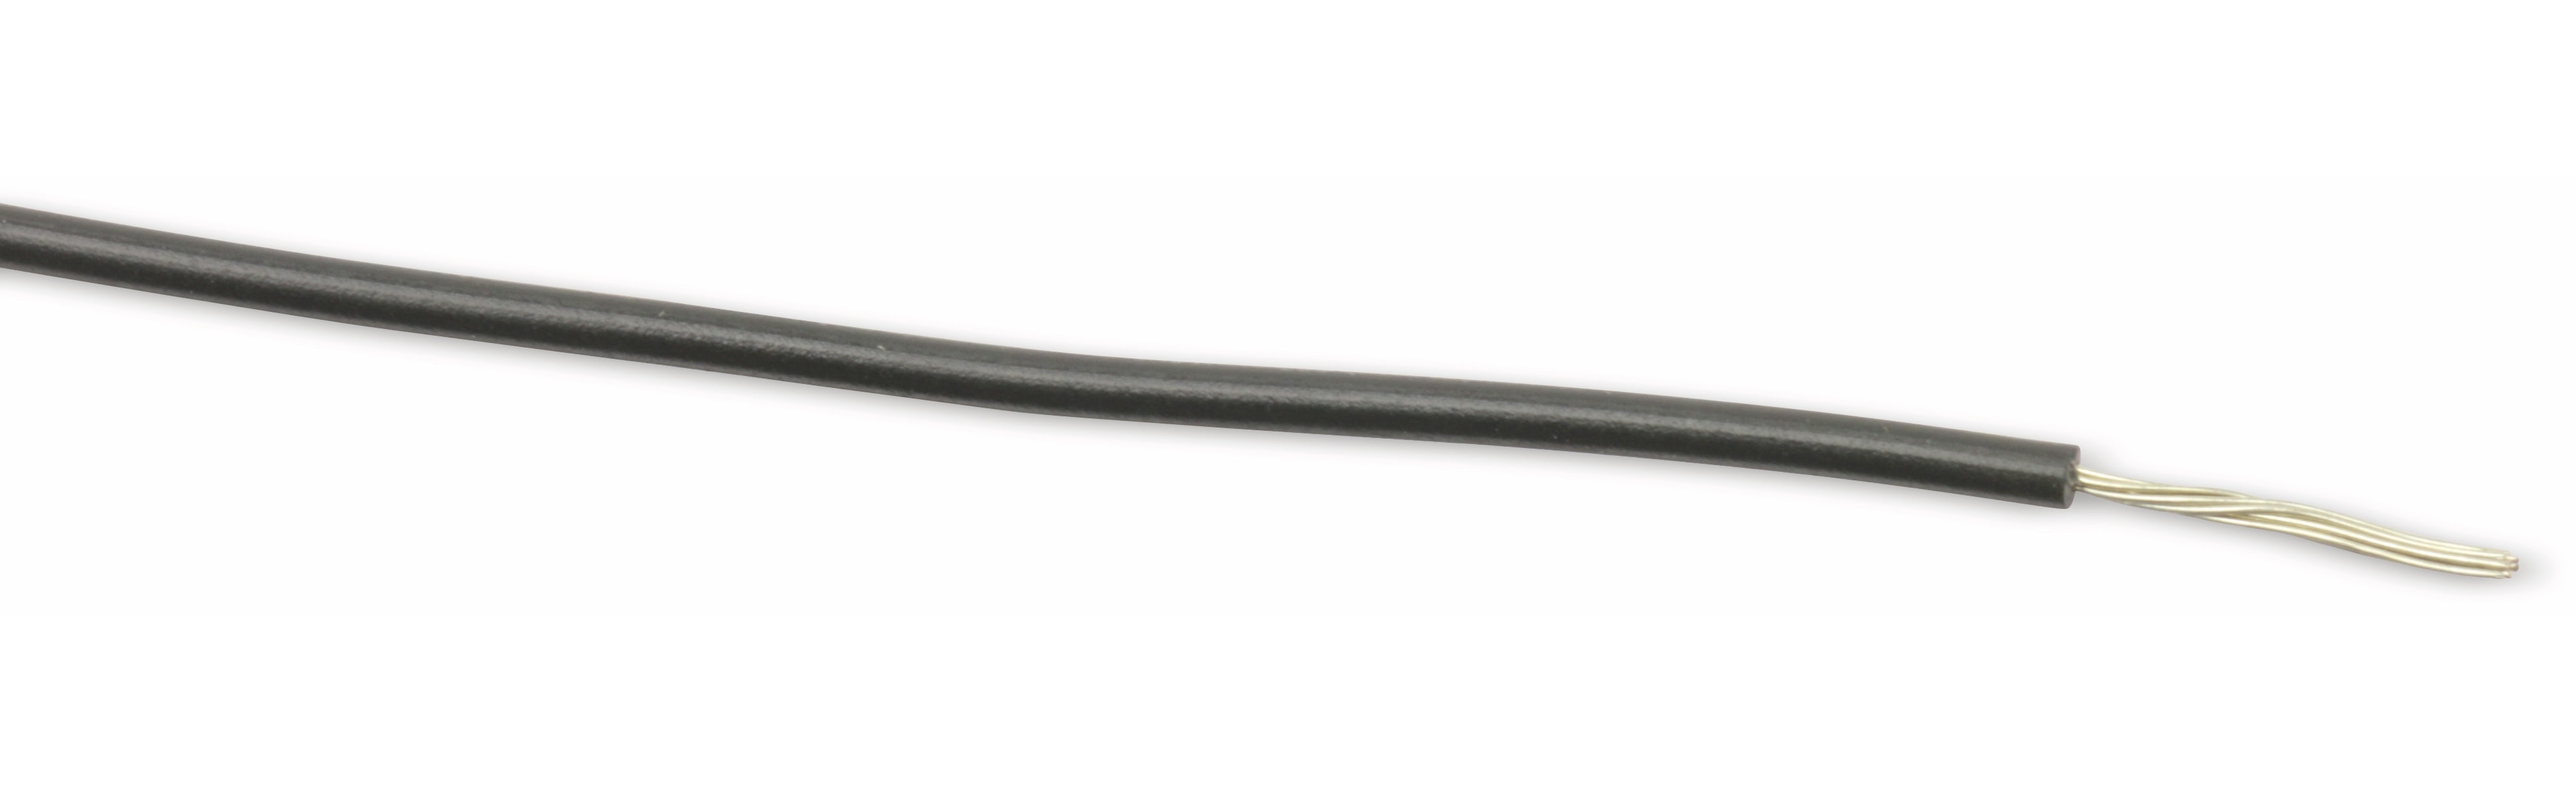 LEONI Schaltlitze LIYW, 1x 0,22 mm², 10 m, schwarz